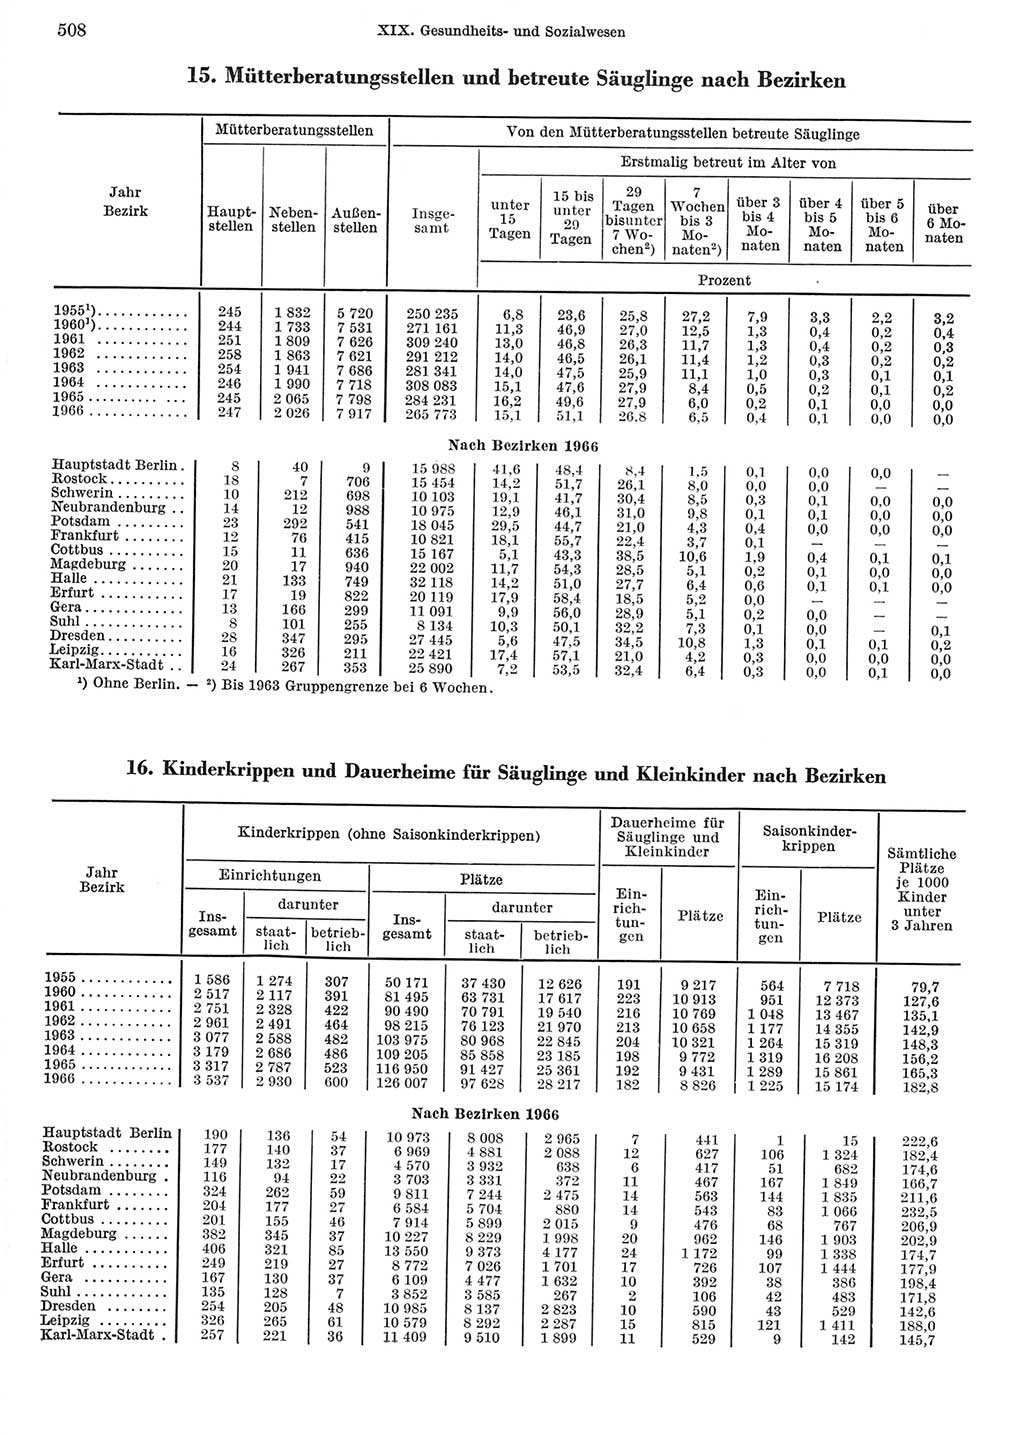 Statistisches Jahrbuch der Deutschen Demokratischen Republik (DDR) 1967, Seite 508 (Stat. Jb. DDR 1967, S. 508)